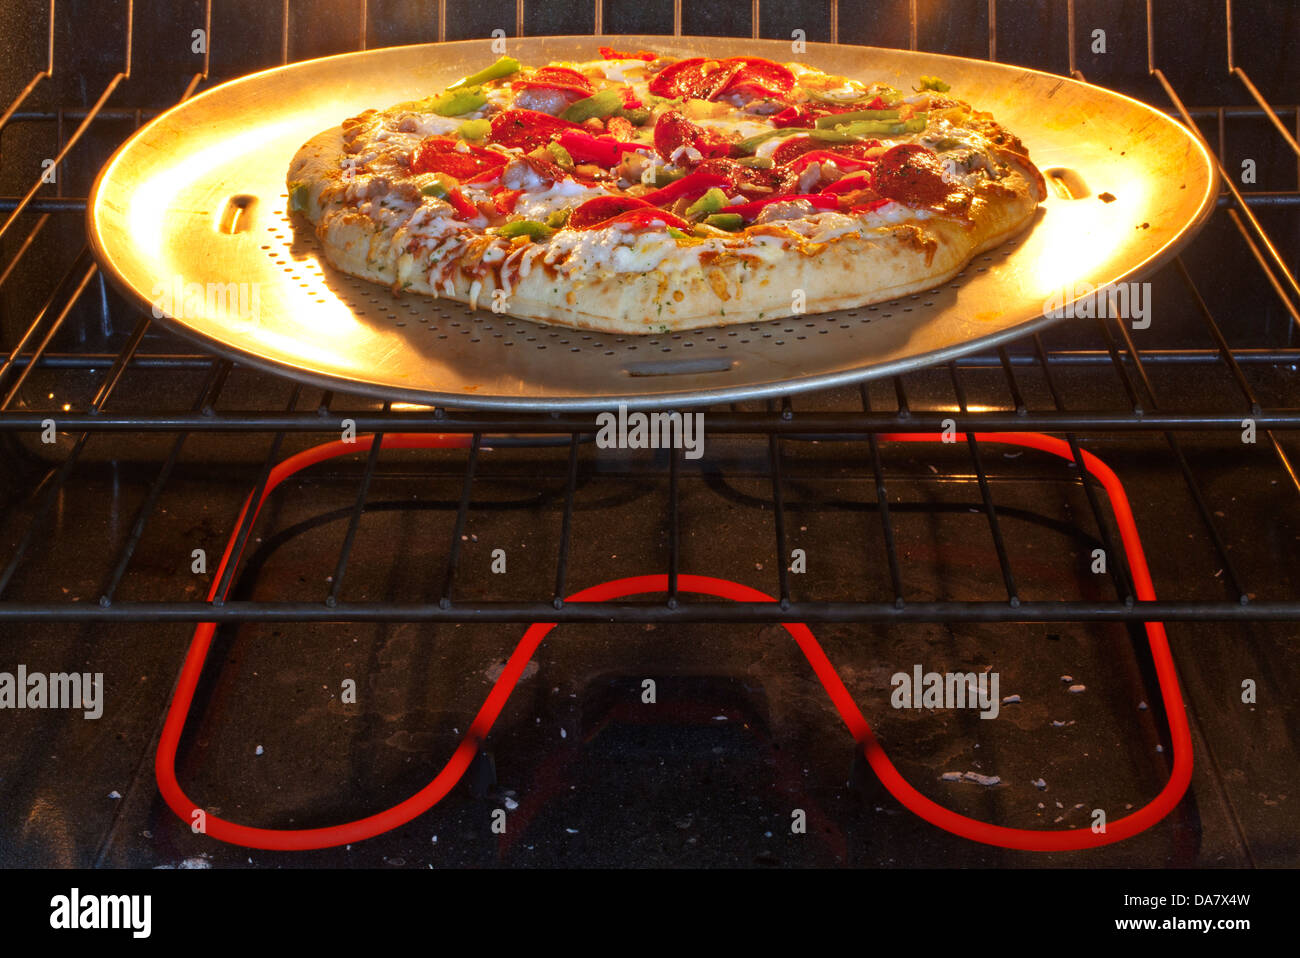 Une pizza congelée dans un four de cuisson Photo Stock - Alamy